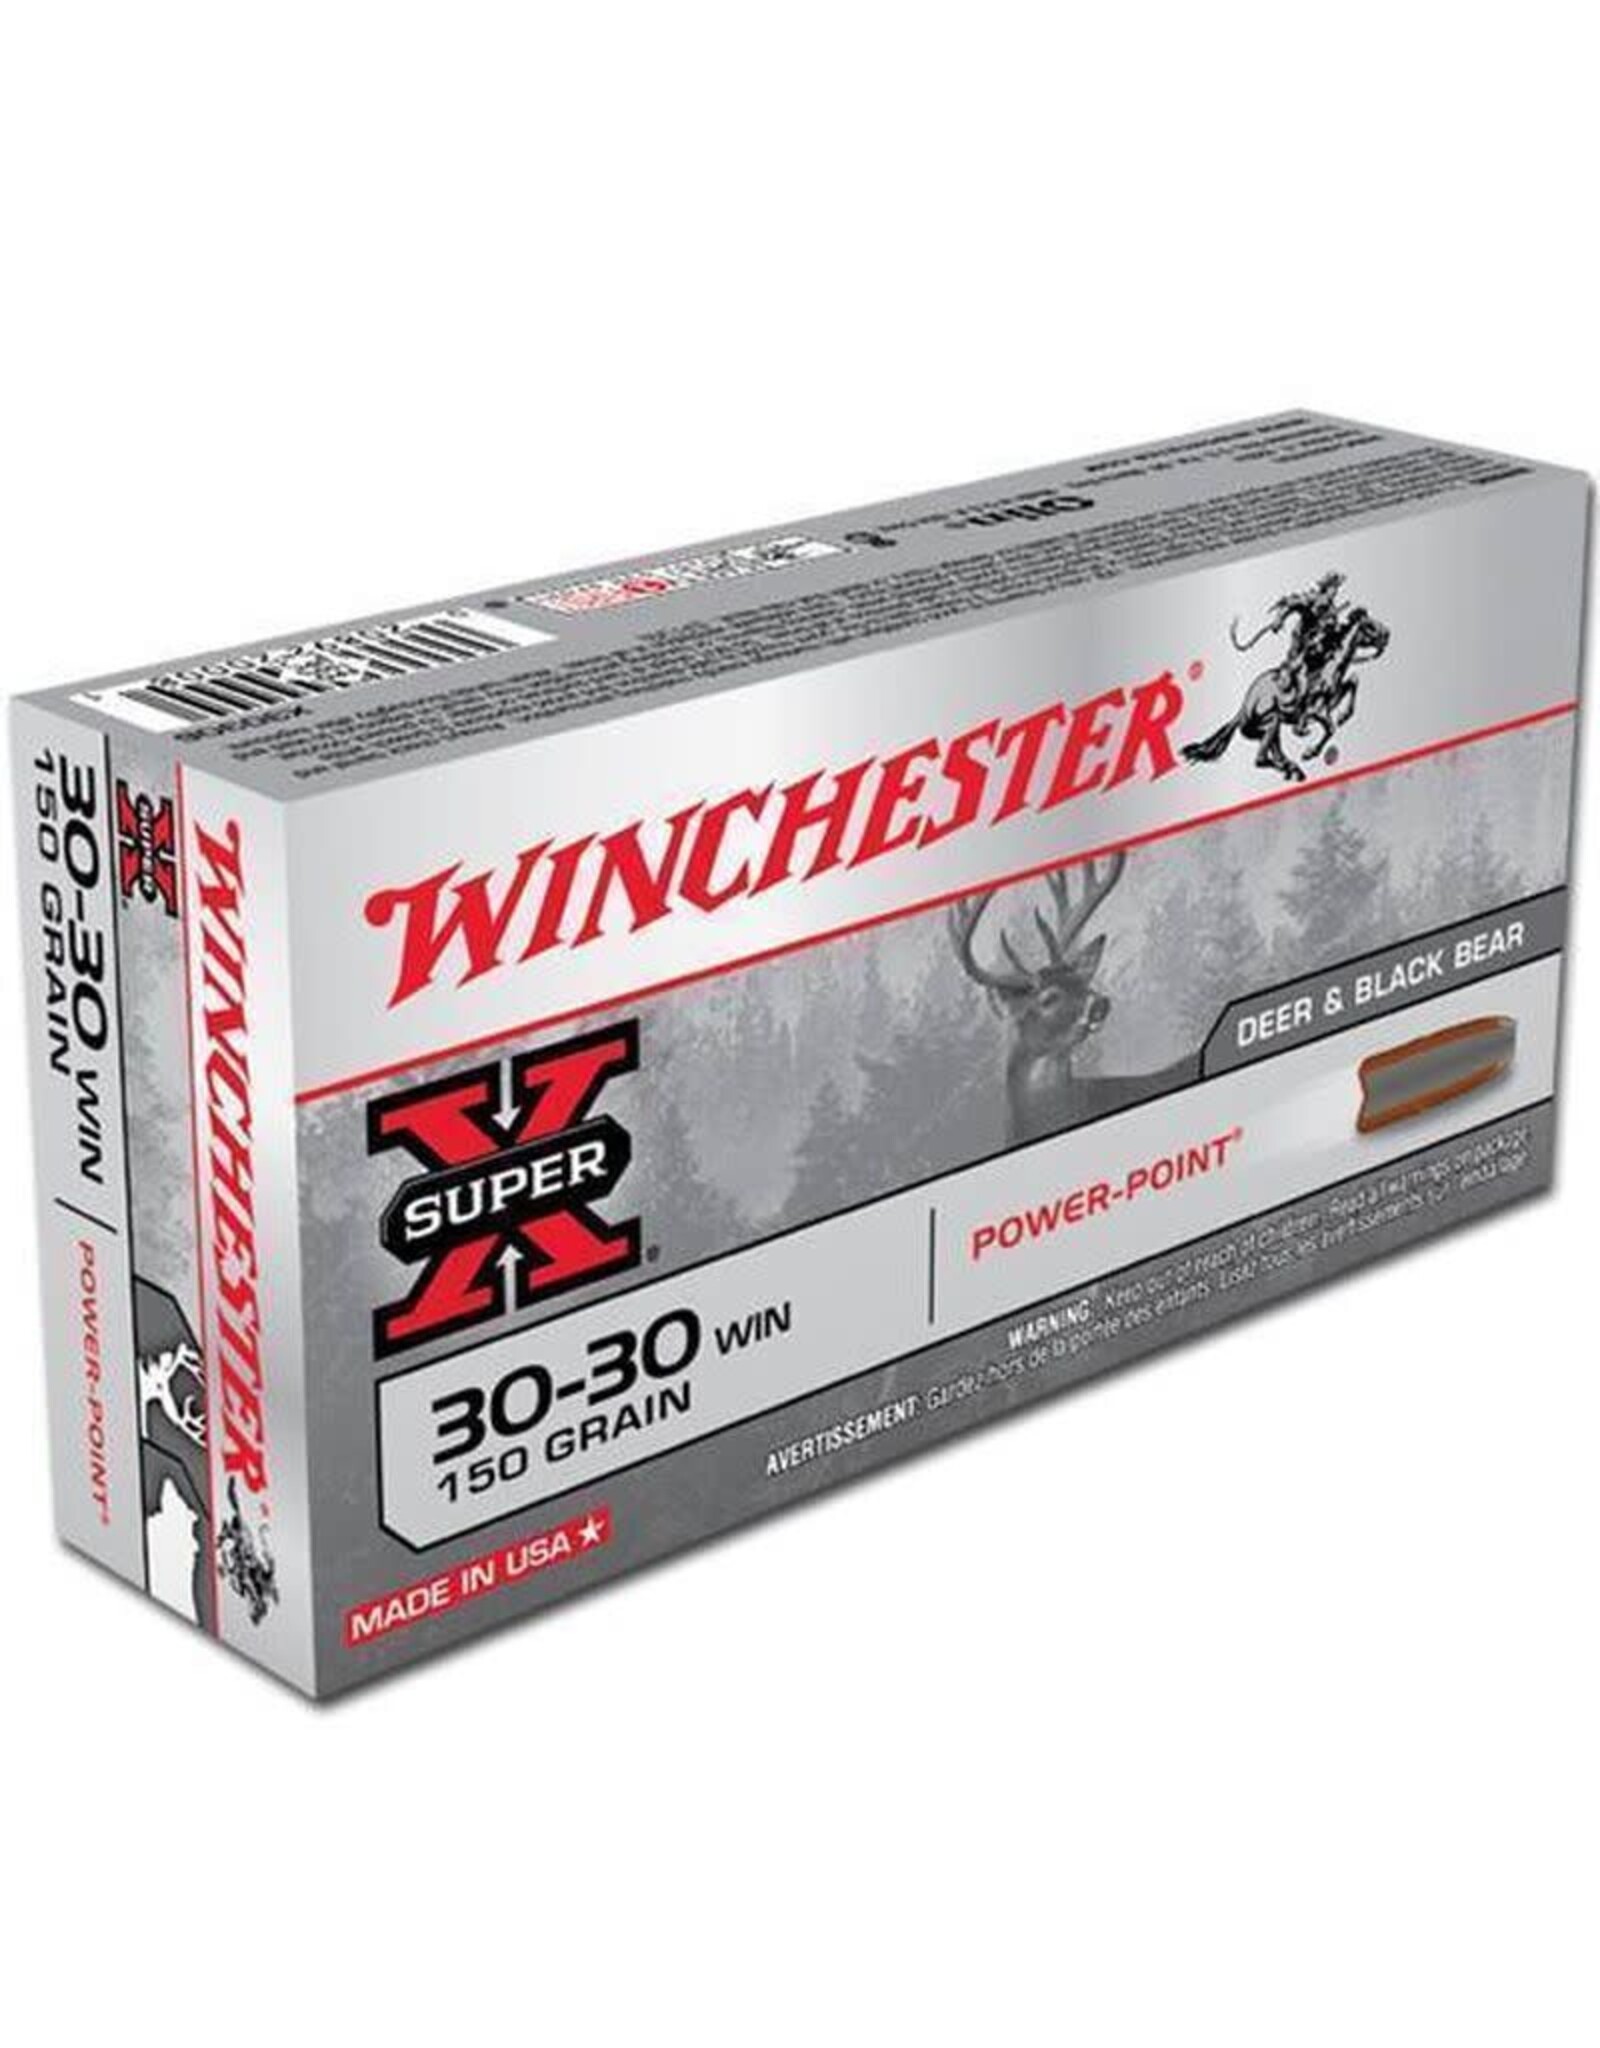 Winchester WINCHESTER SUPER-X AMMO 30-30 WIN 150GR POWER-POINT DEER & BLACK BEAR 20/BX